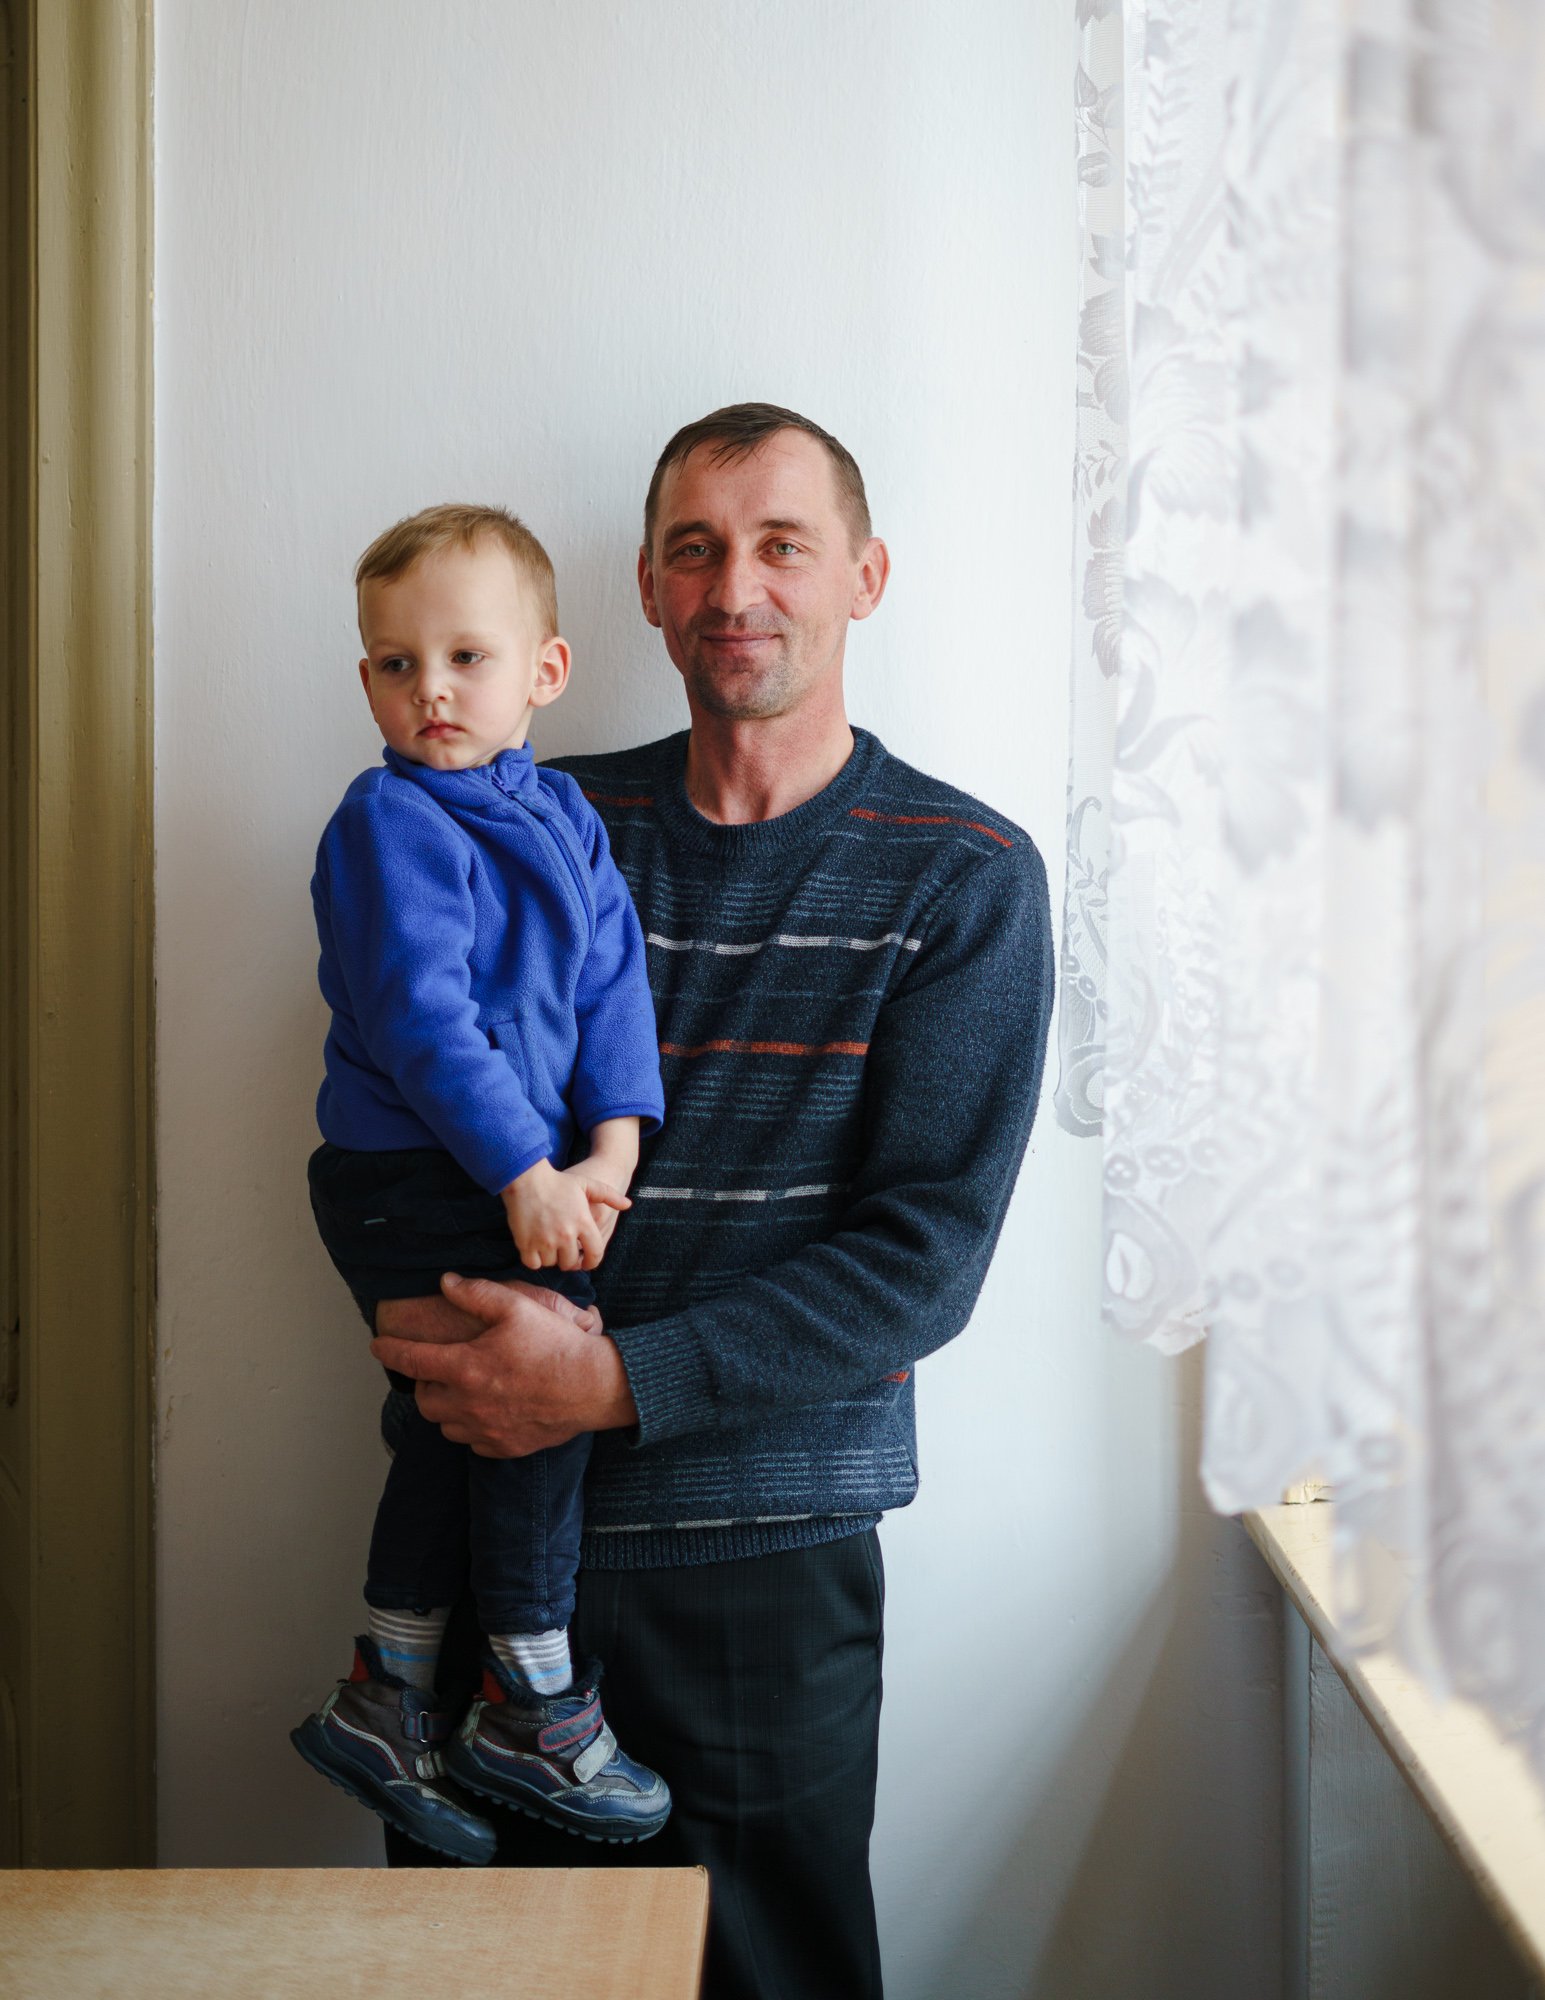  Krzysztof and his son  Poland, 2022 